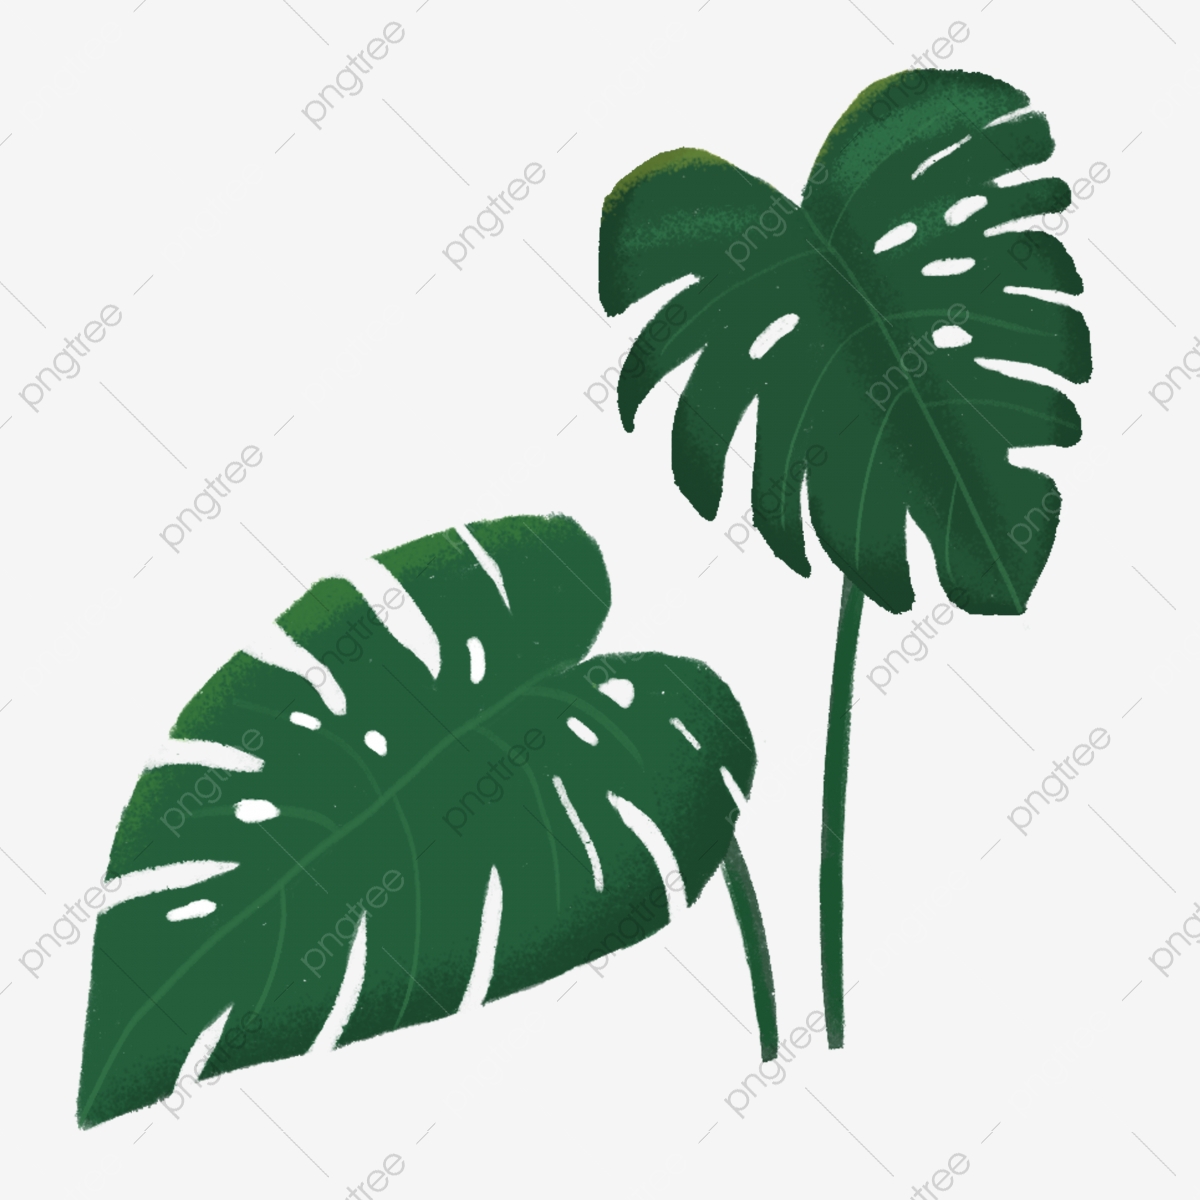 plant clipart tropical plant